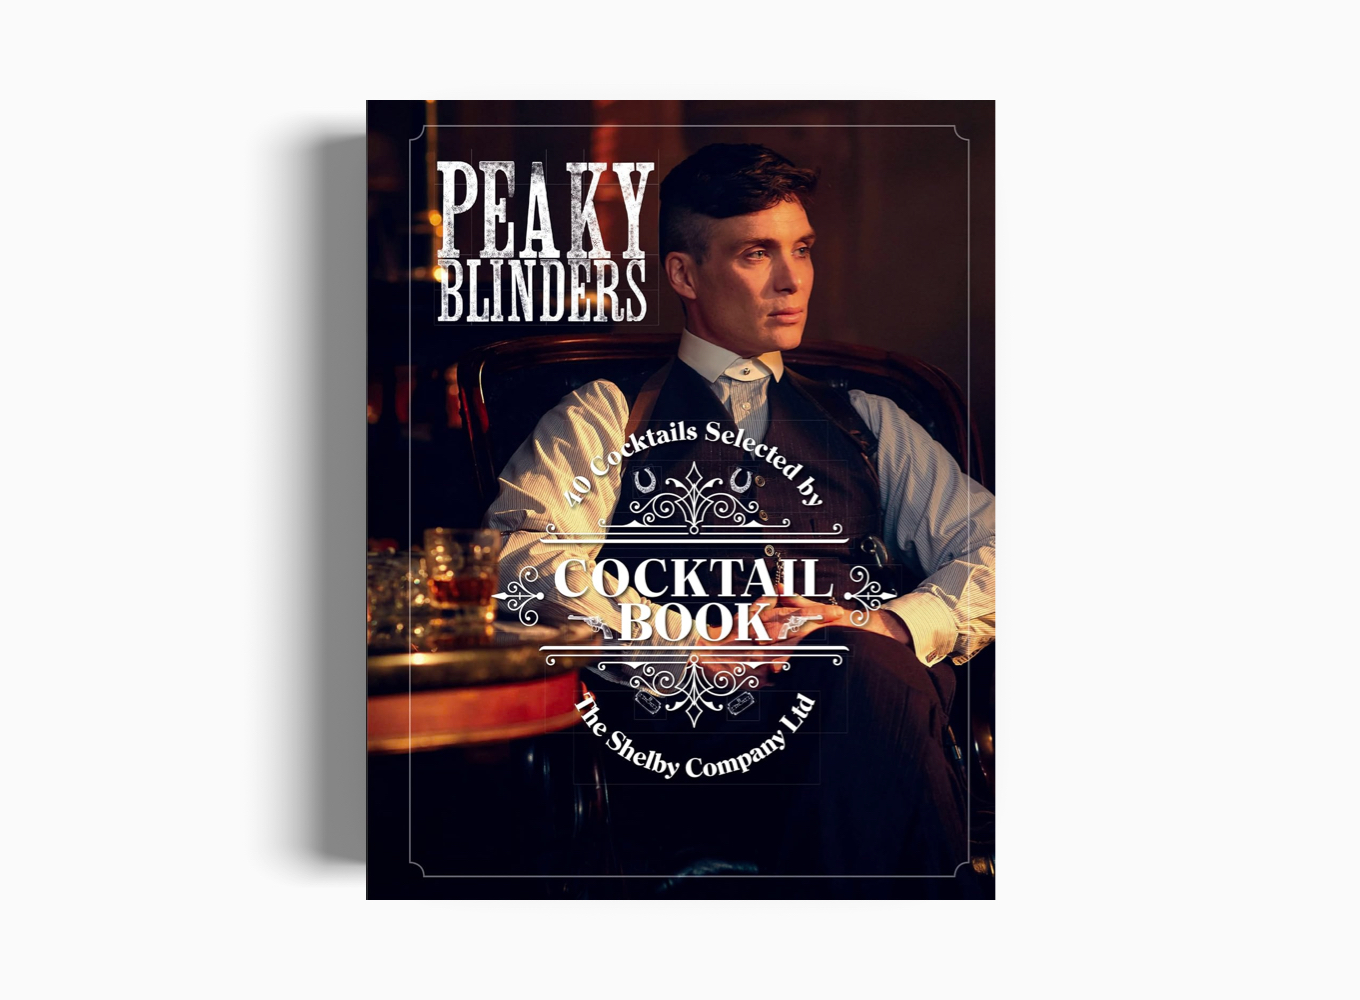 PEAKY BLINDERS COCKTAIL BOOK